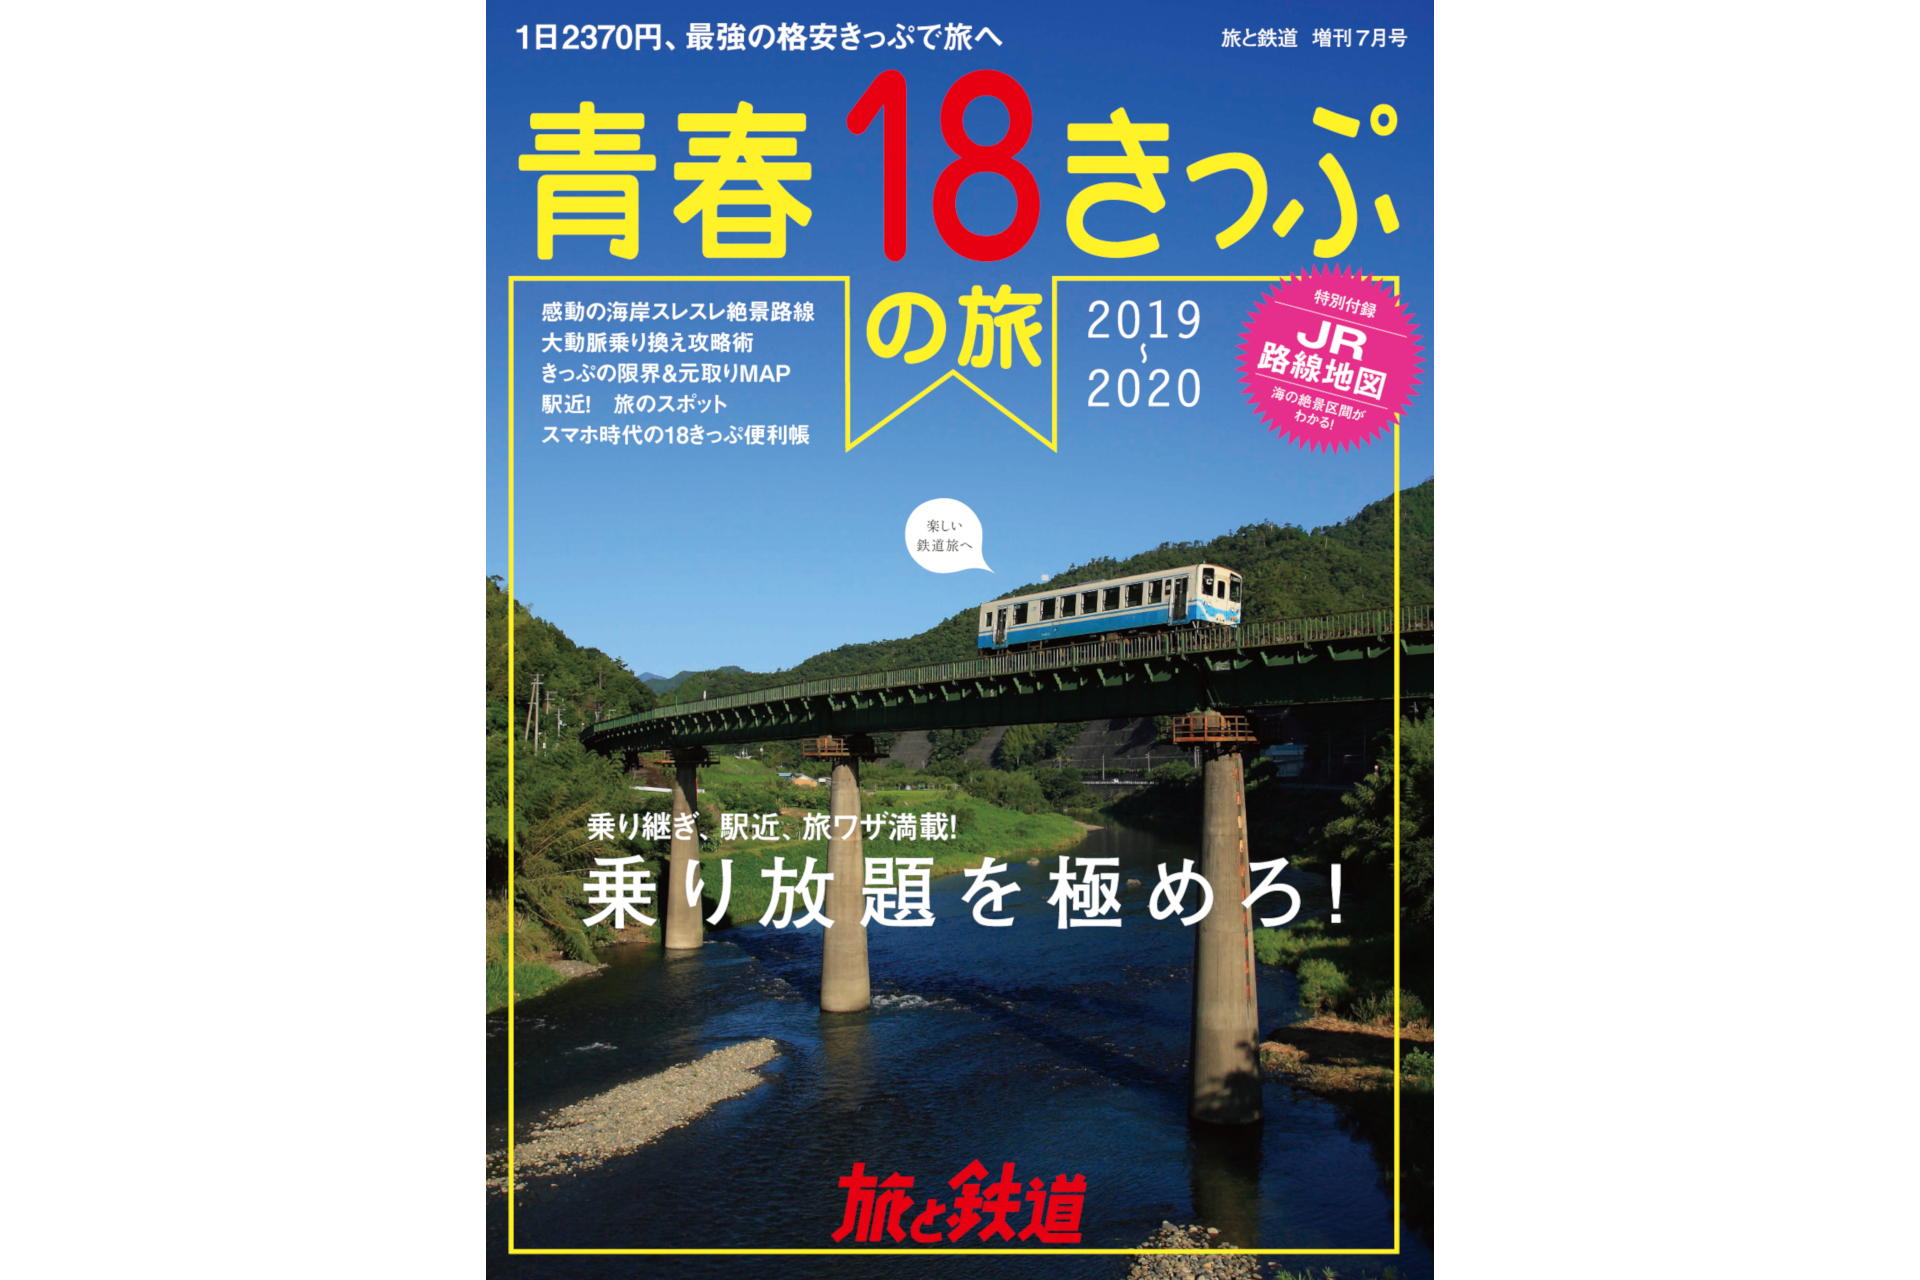 天夢人 旅と鉄道 増刊7月号 青春18きっぷの旅19 6月18日発売 トラベル Watch